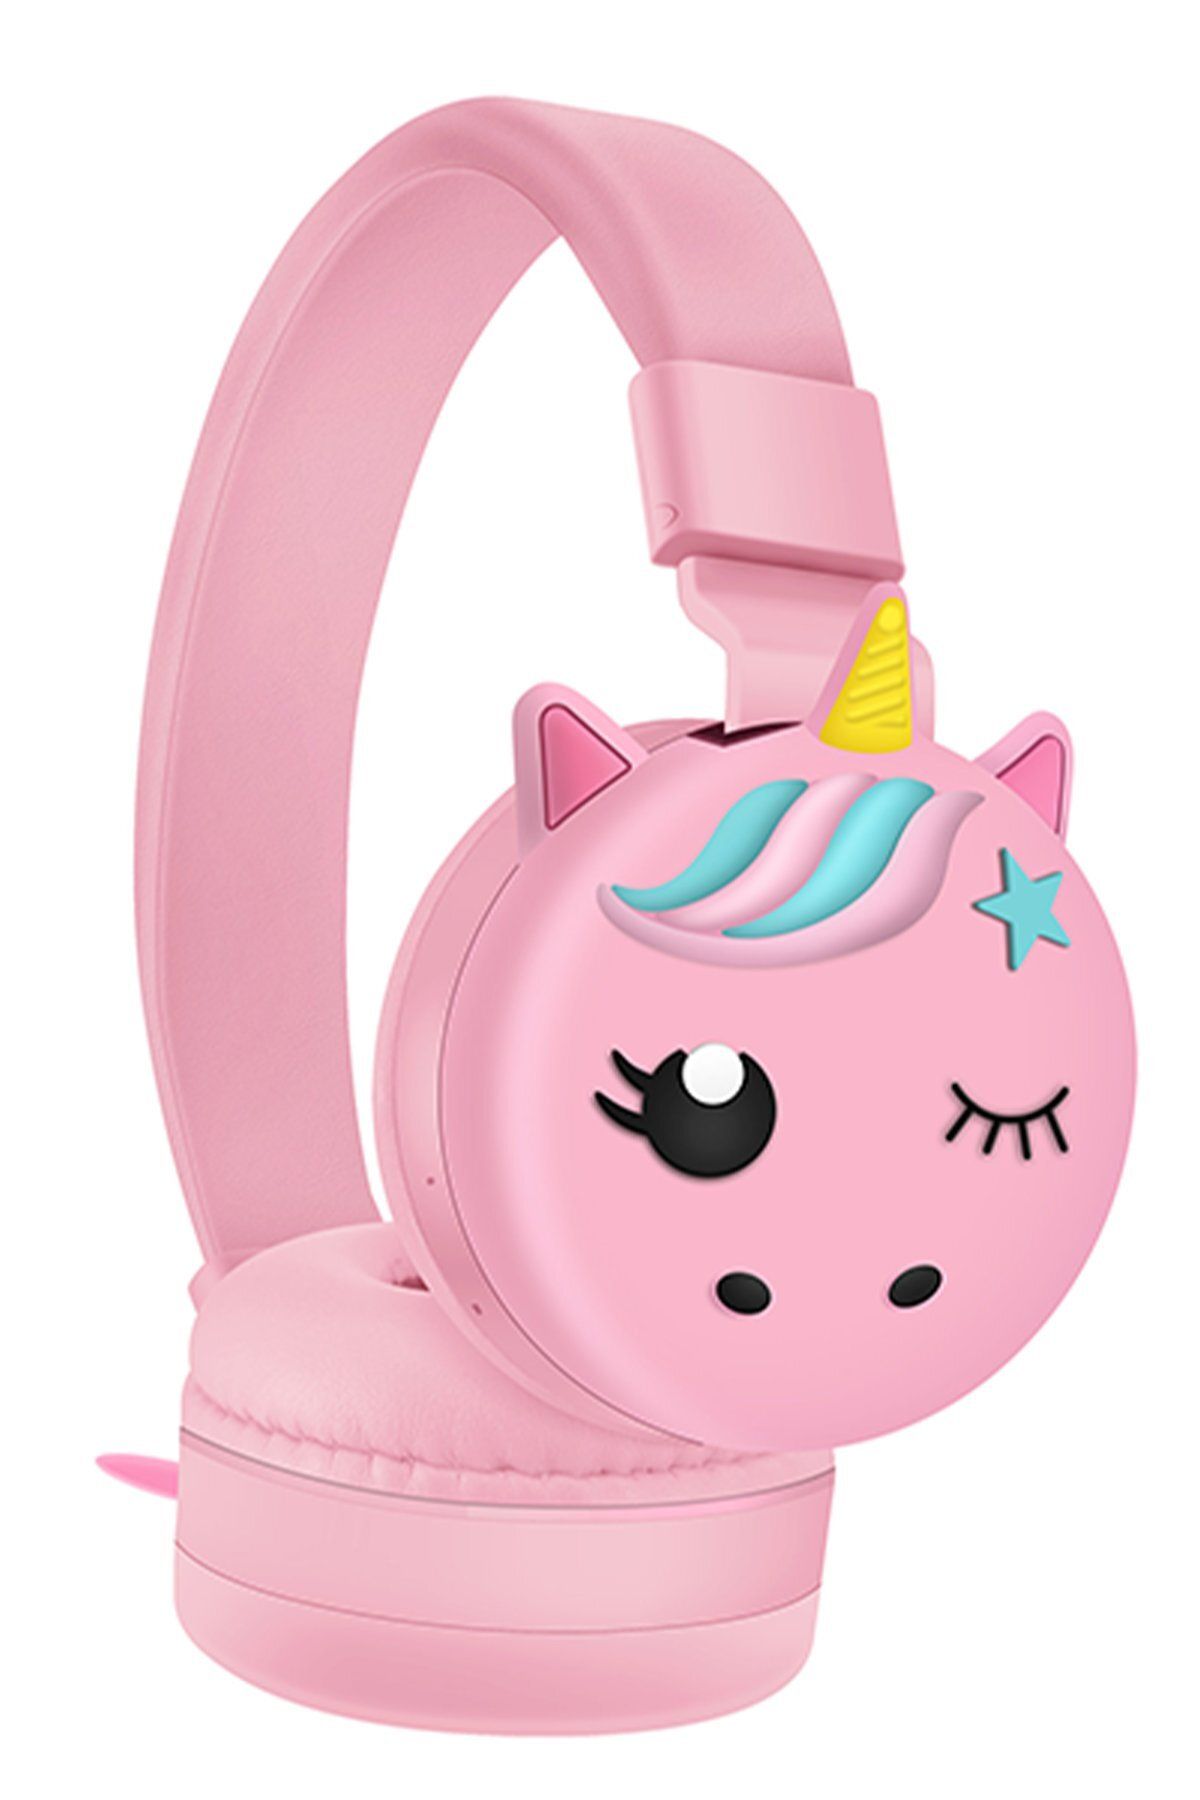 GHK TECH Kablosuz Kafaüstü Kız Çocuk Kulaklığı Ergonomik Premium Kalite Unicorn